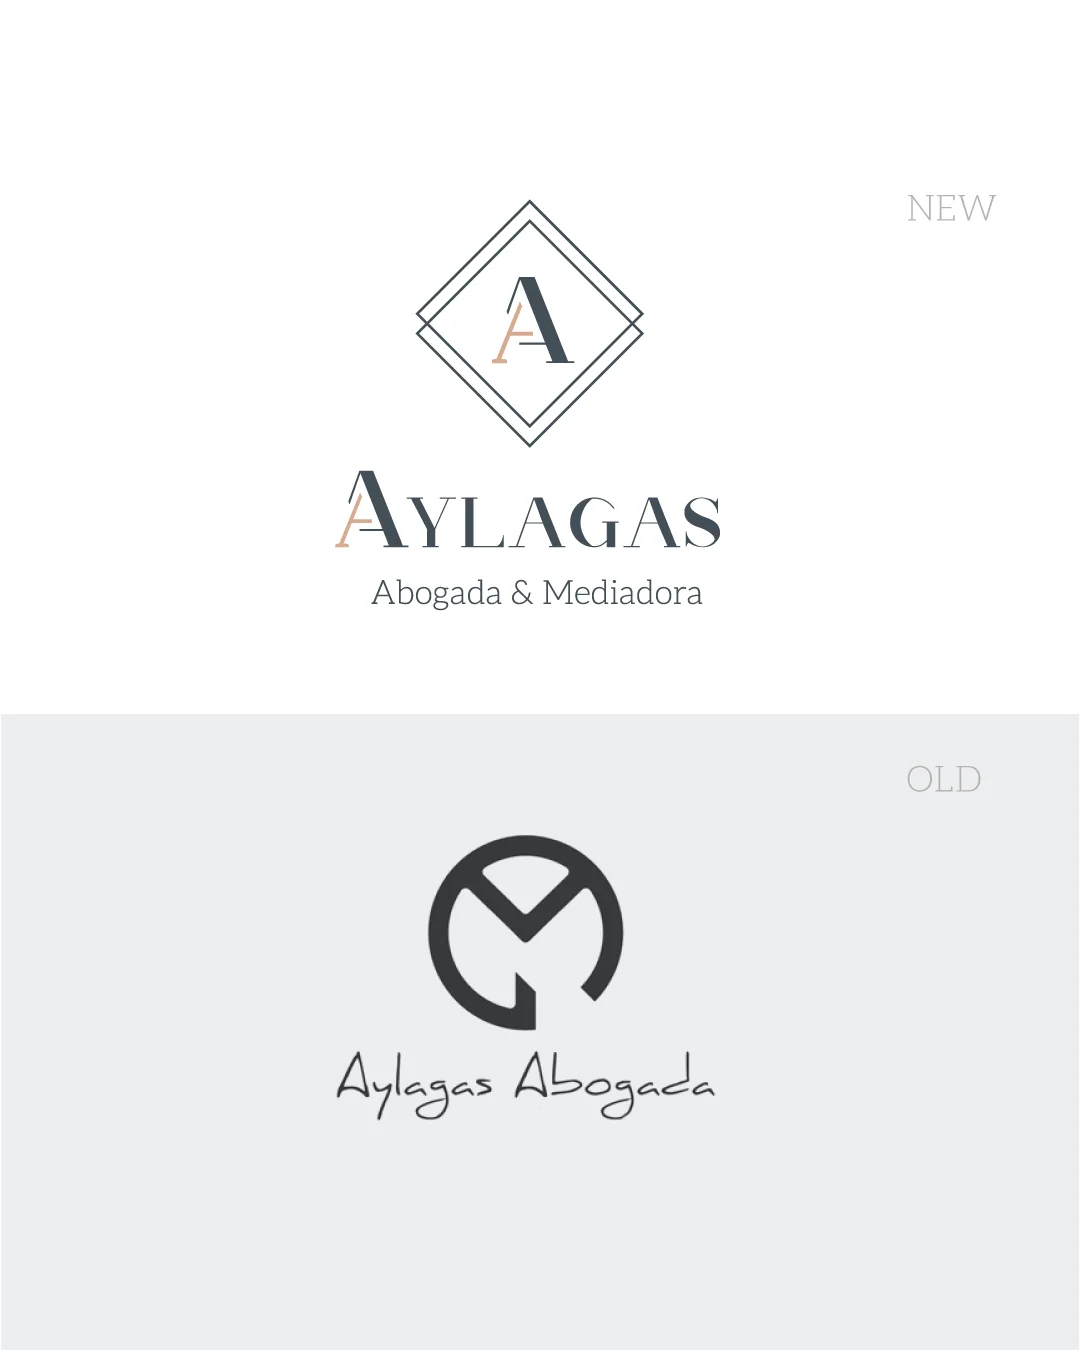 Rediseño de marca (rebranding) para la Aylagas, abogada y mediadora